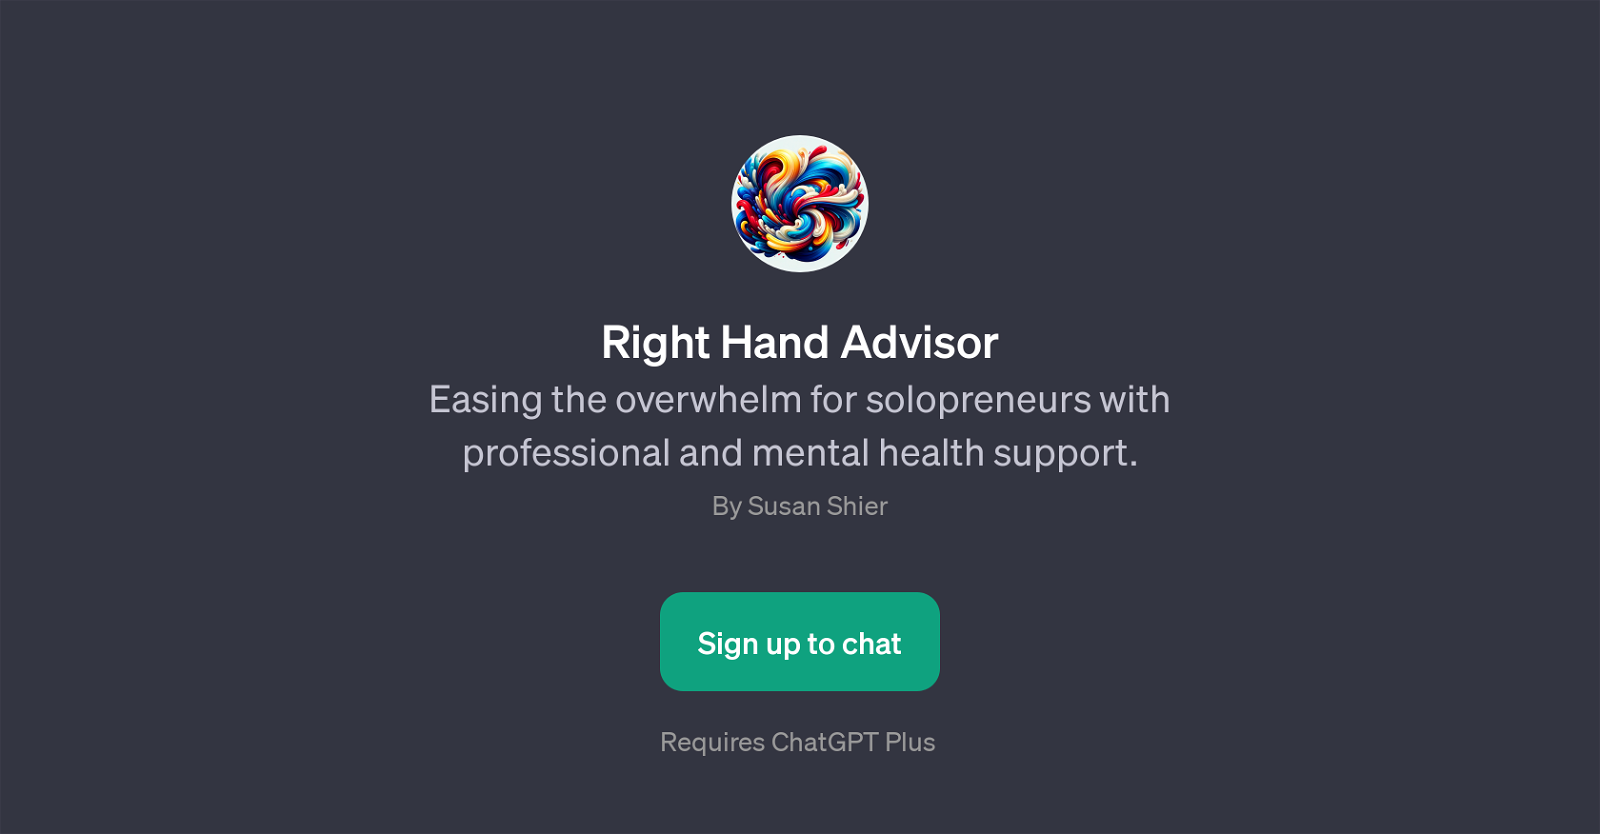 Right Hand Advisor website